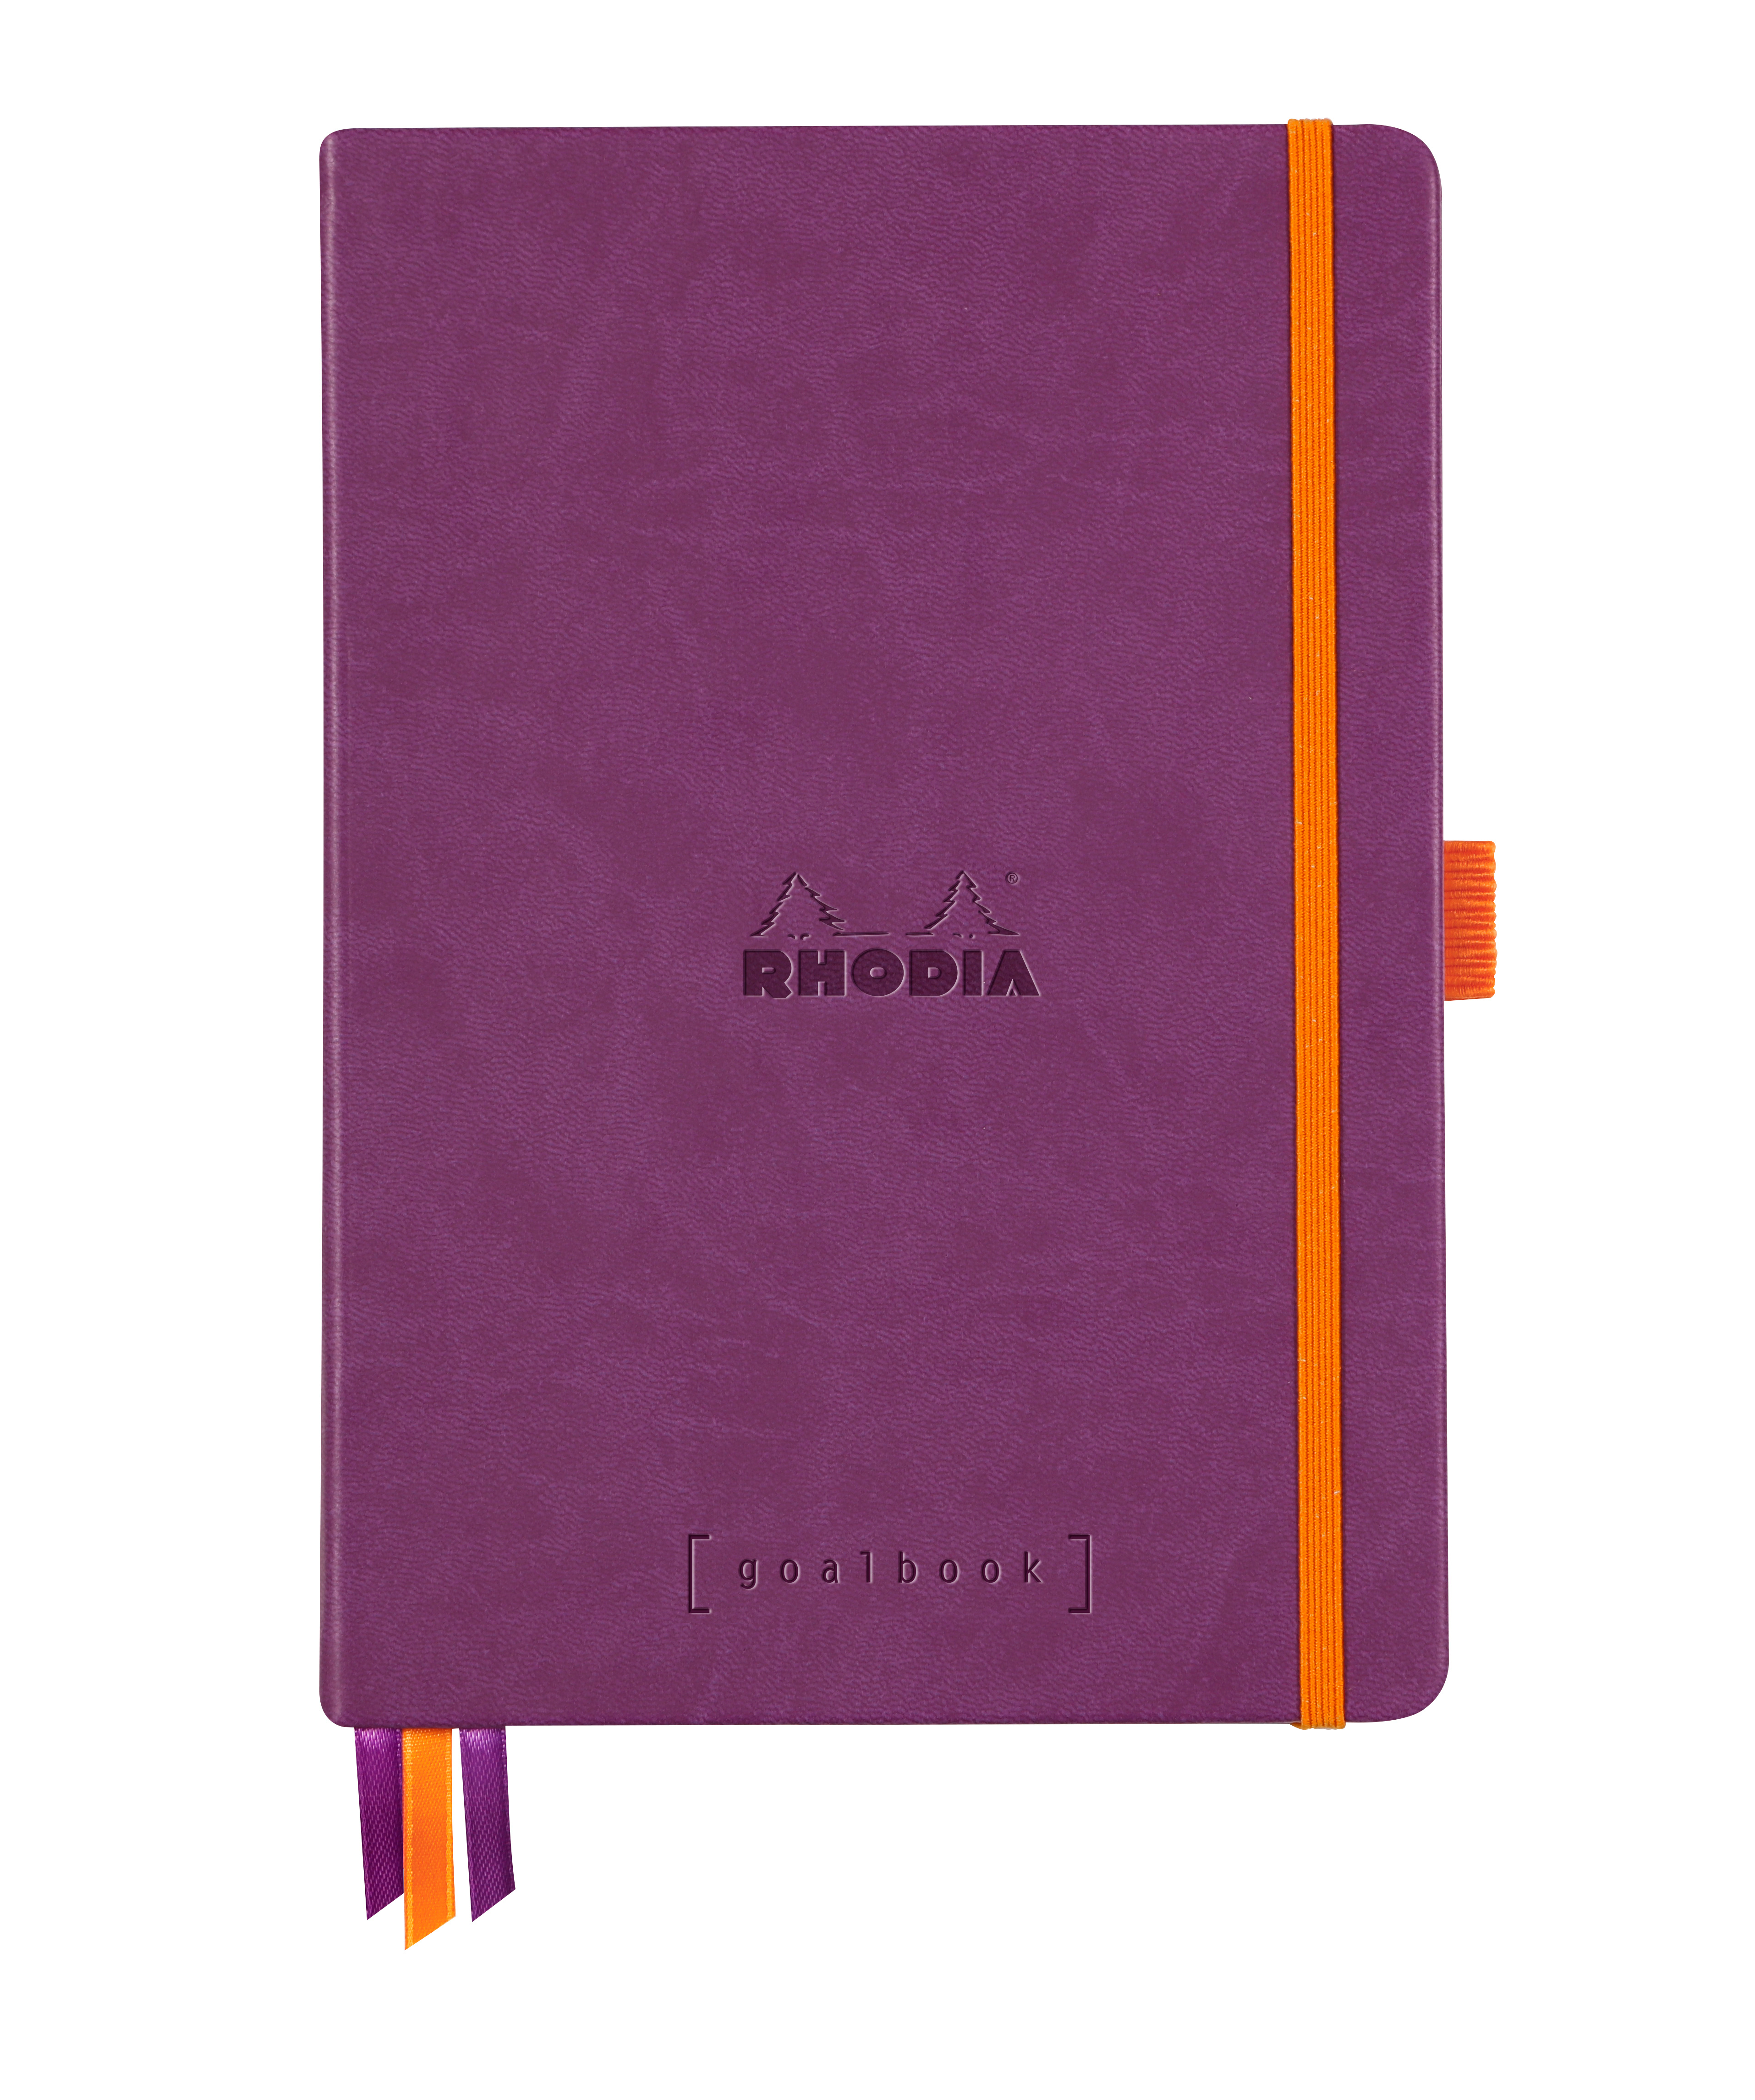 RHODIA Goalbook Carnet A5 118579C Hardcover violet 240 f. Hardcover violet 240 f.